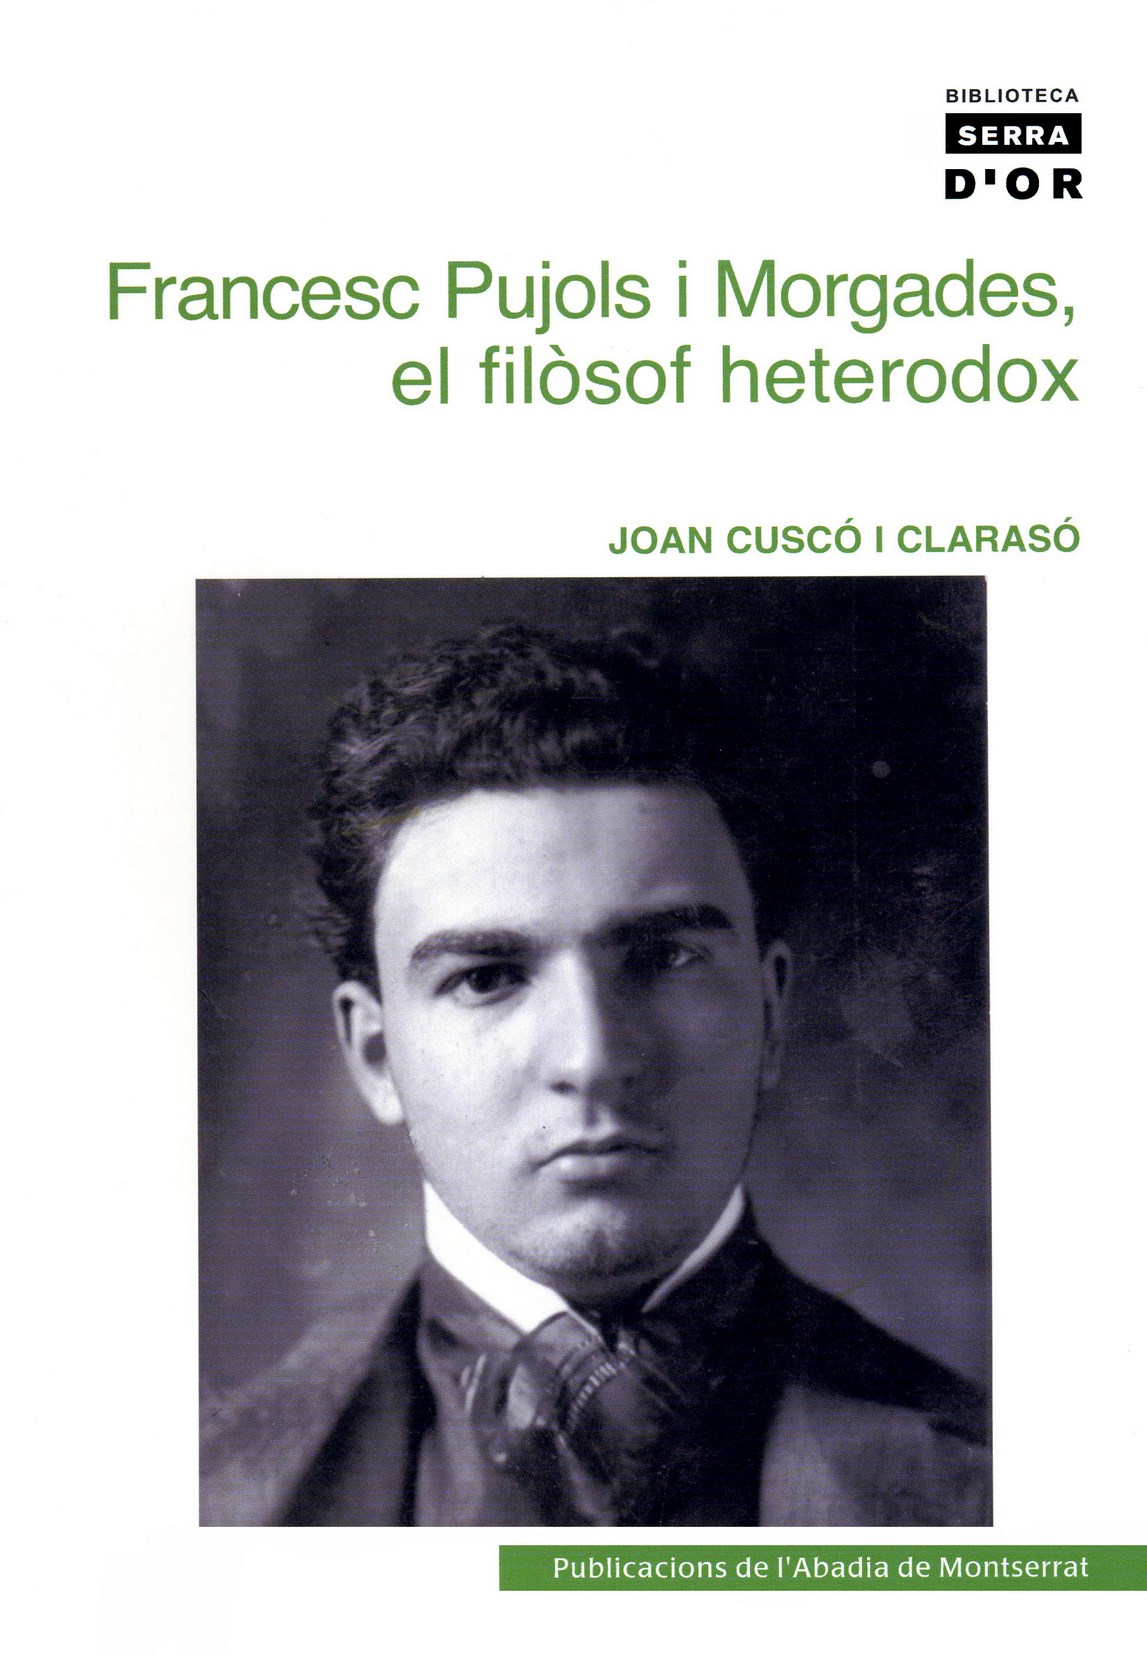 Joan Cuscó i Clarasó